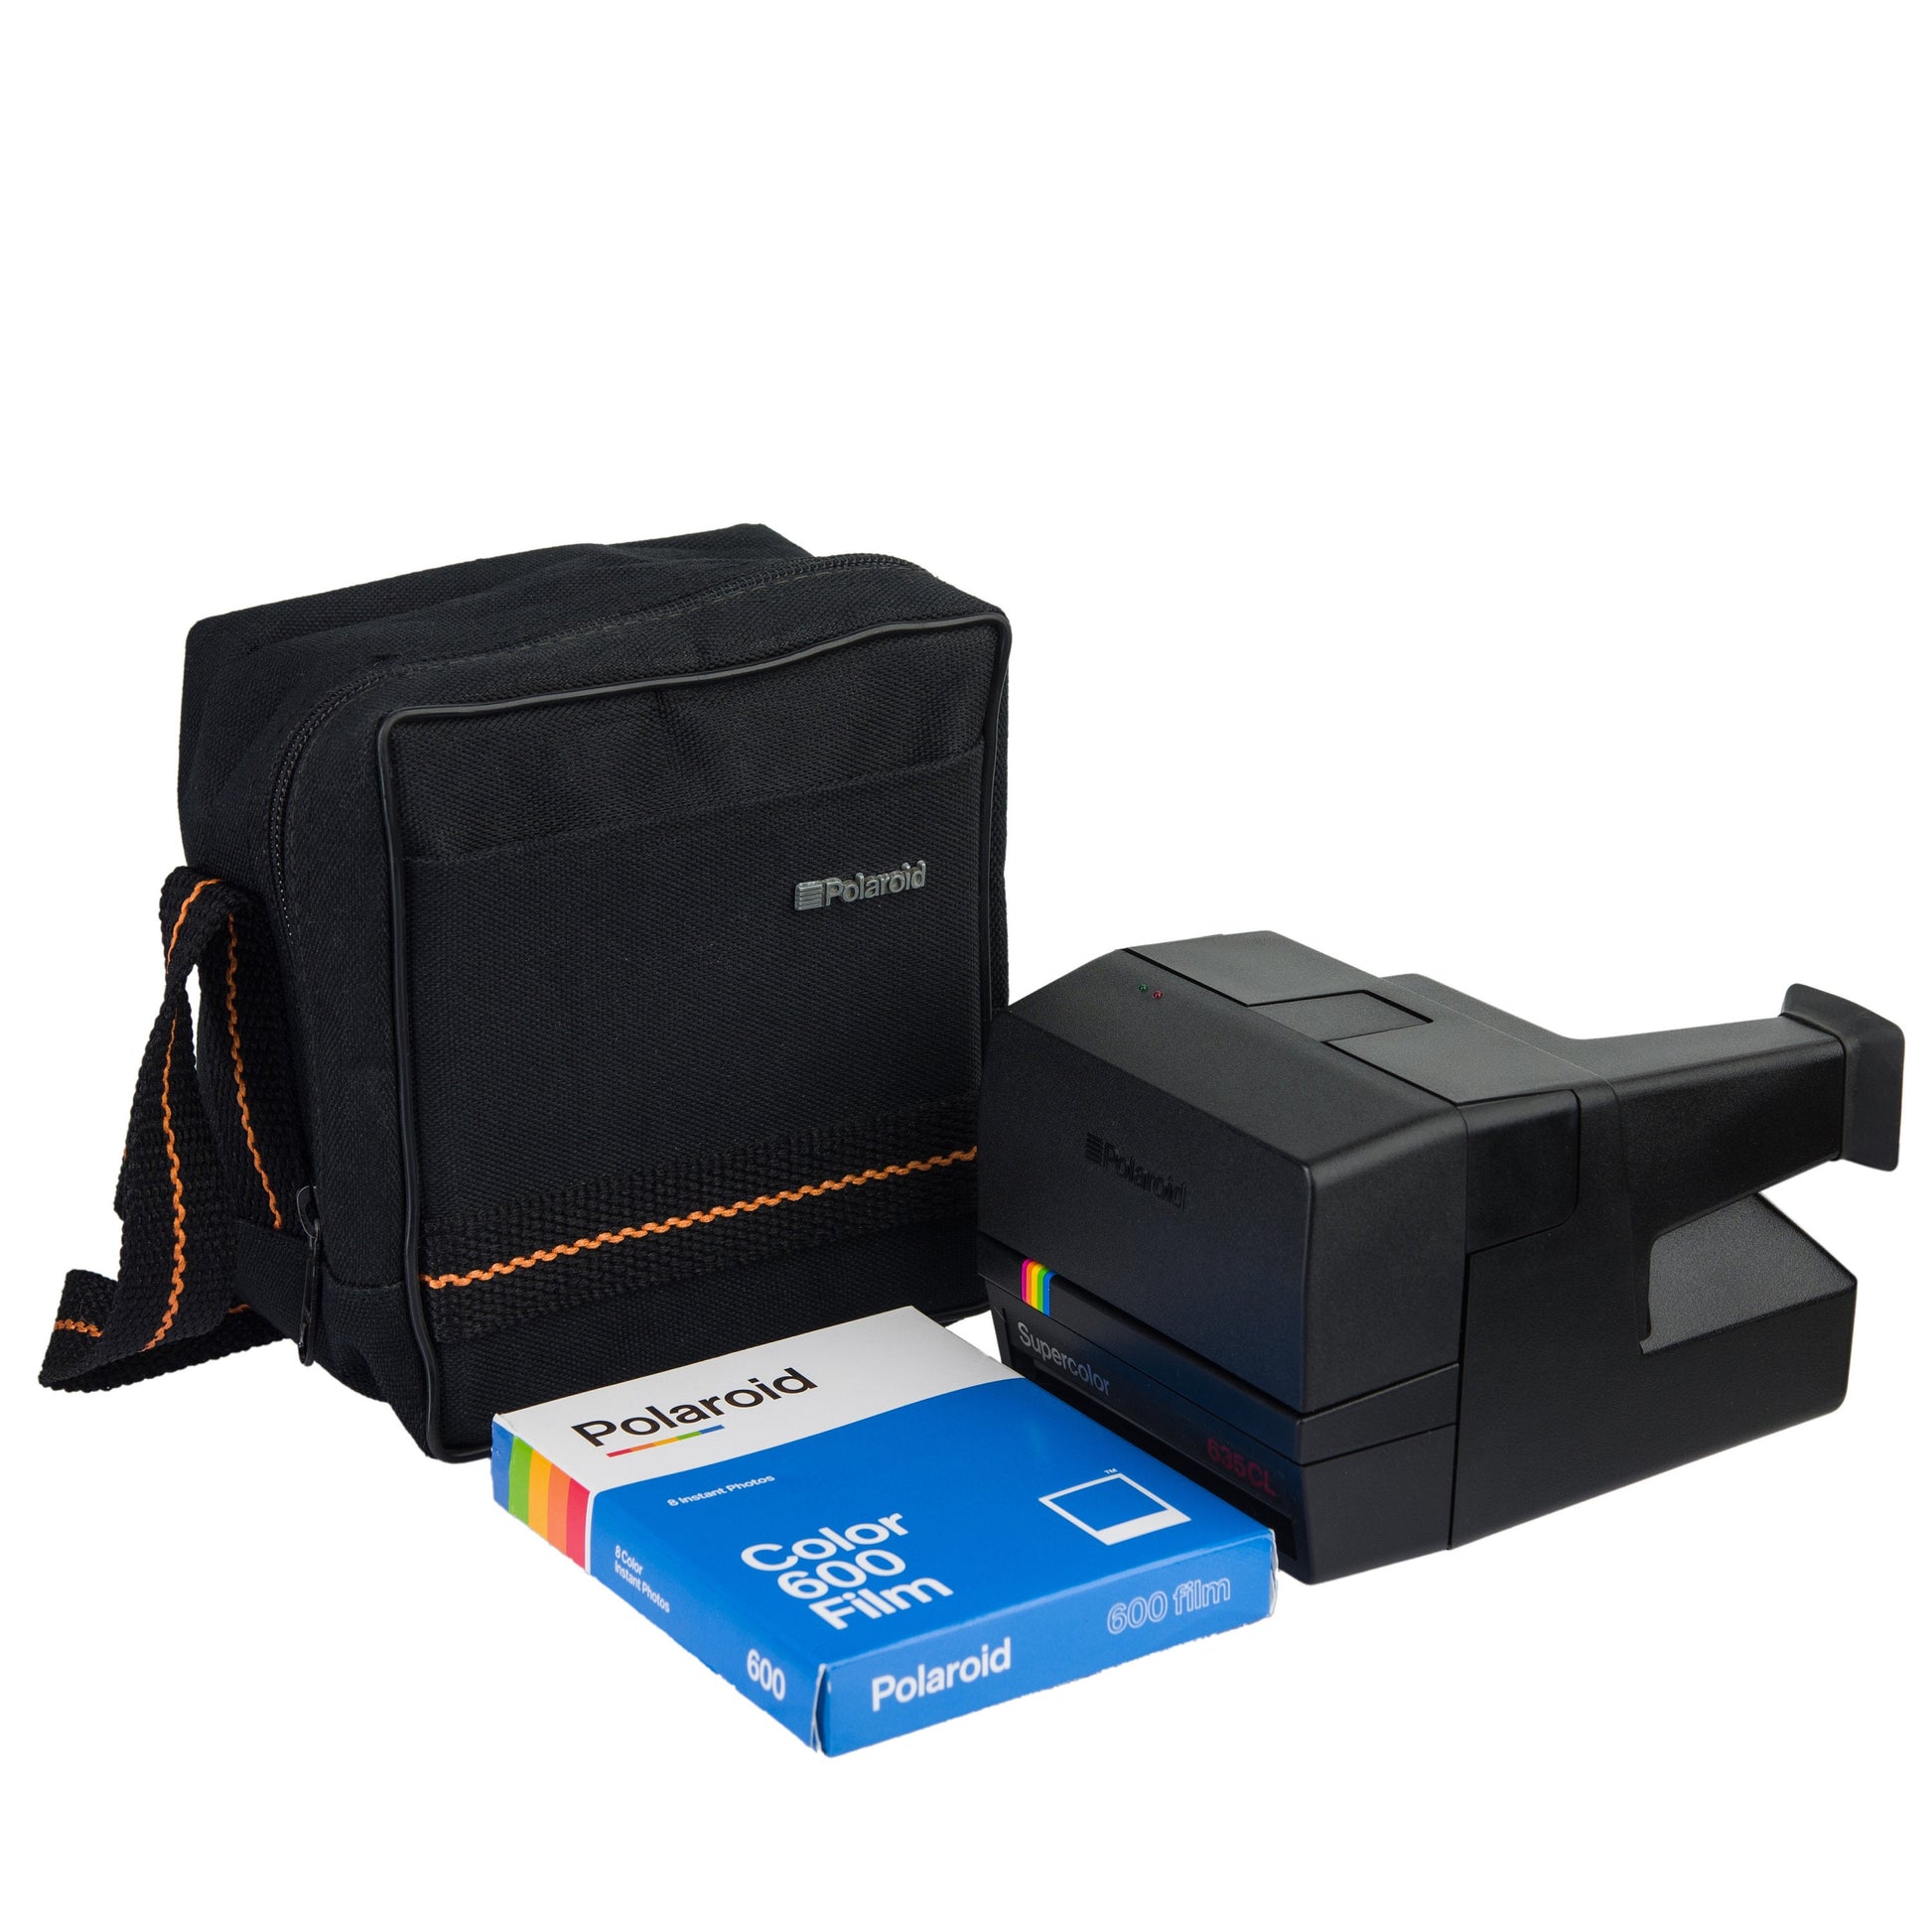 Black Polaroid Camera Bag,Polaroid 600, Original POLAROID, Birthday Gift, Photographer Gift, Vintage Bag, Fabric Bag - Vintage Polaroid Instant Cameras